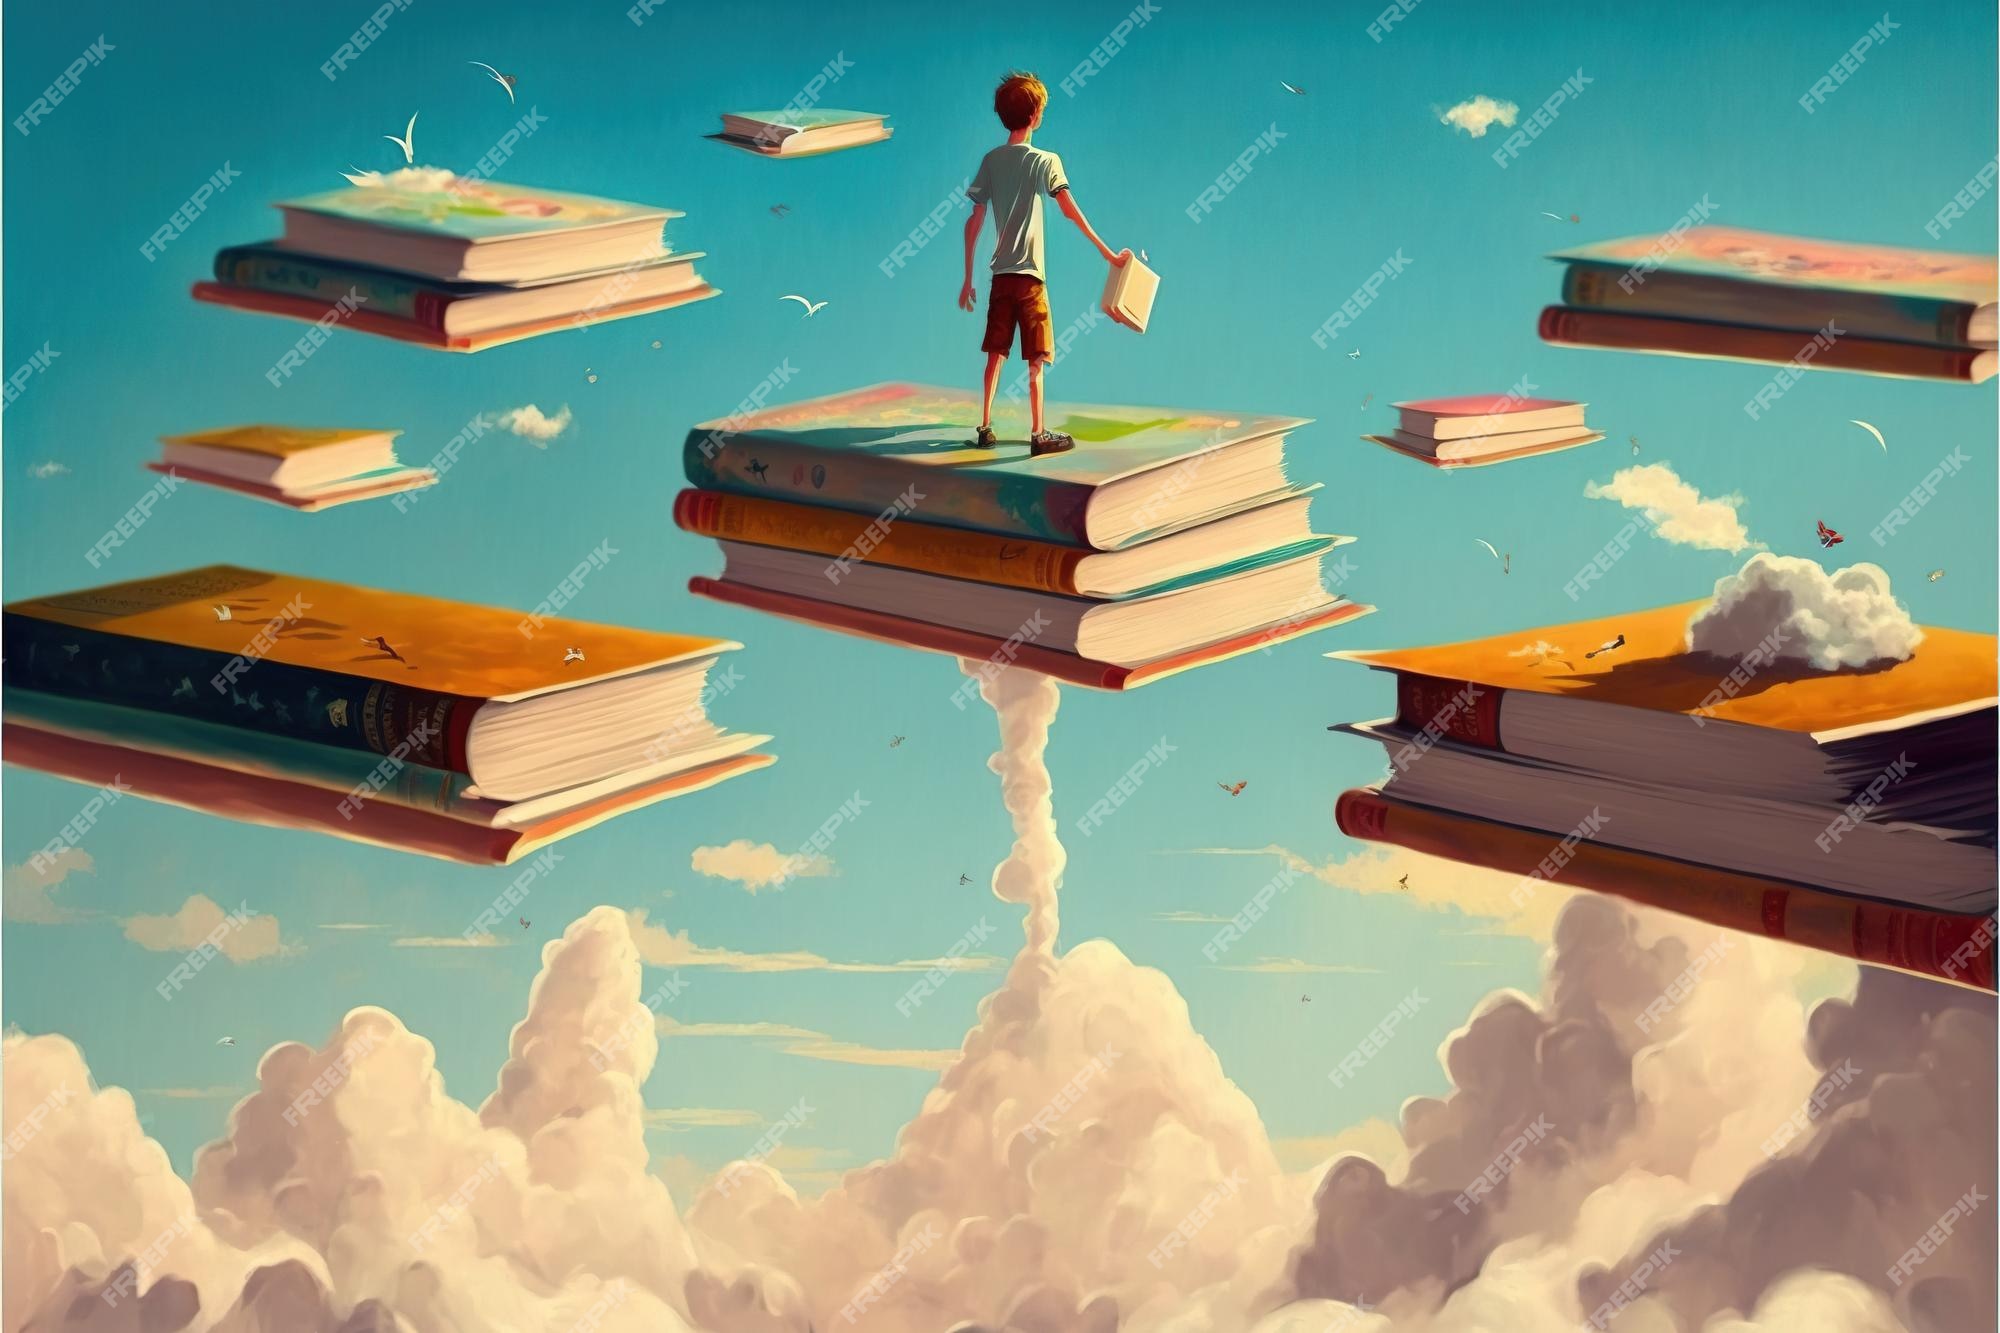 کودک روی پسر کتاب جادویی که روی کتاب باز شده ایستاده و به کتاب‌های دیگر شناور در هوا نگاه می‌کند، نقاشی تصویرگری به سبک هنر دیجیتال- دانلود رایگان -عکس و وکتور